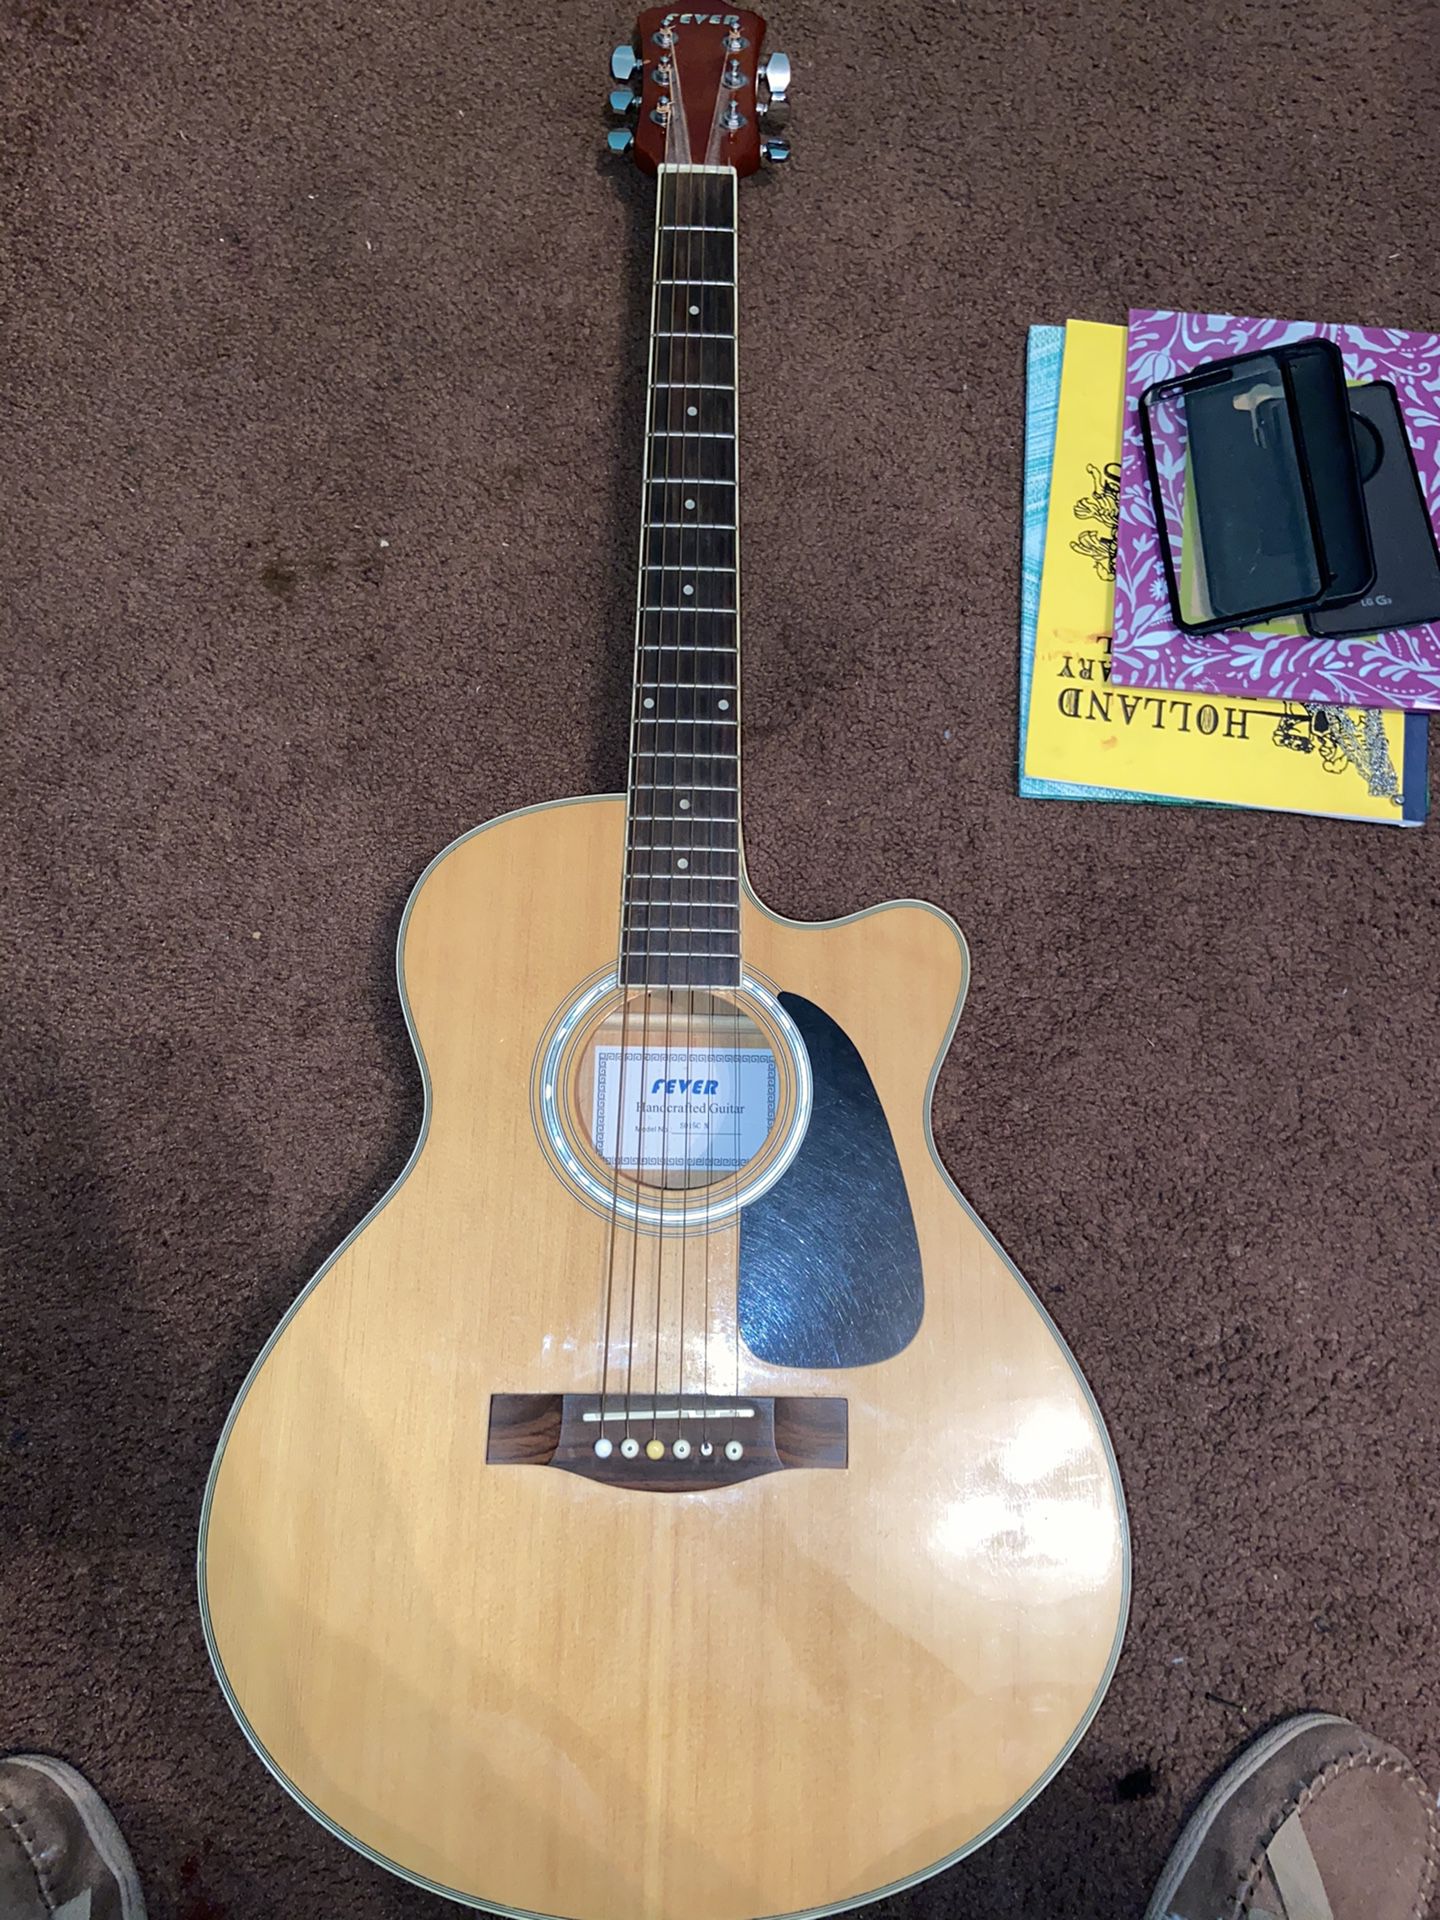 Acoustic Guitar, Electric Guitar and Guitar Amp